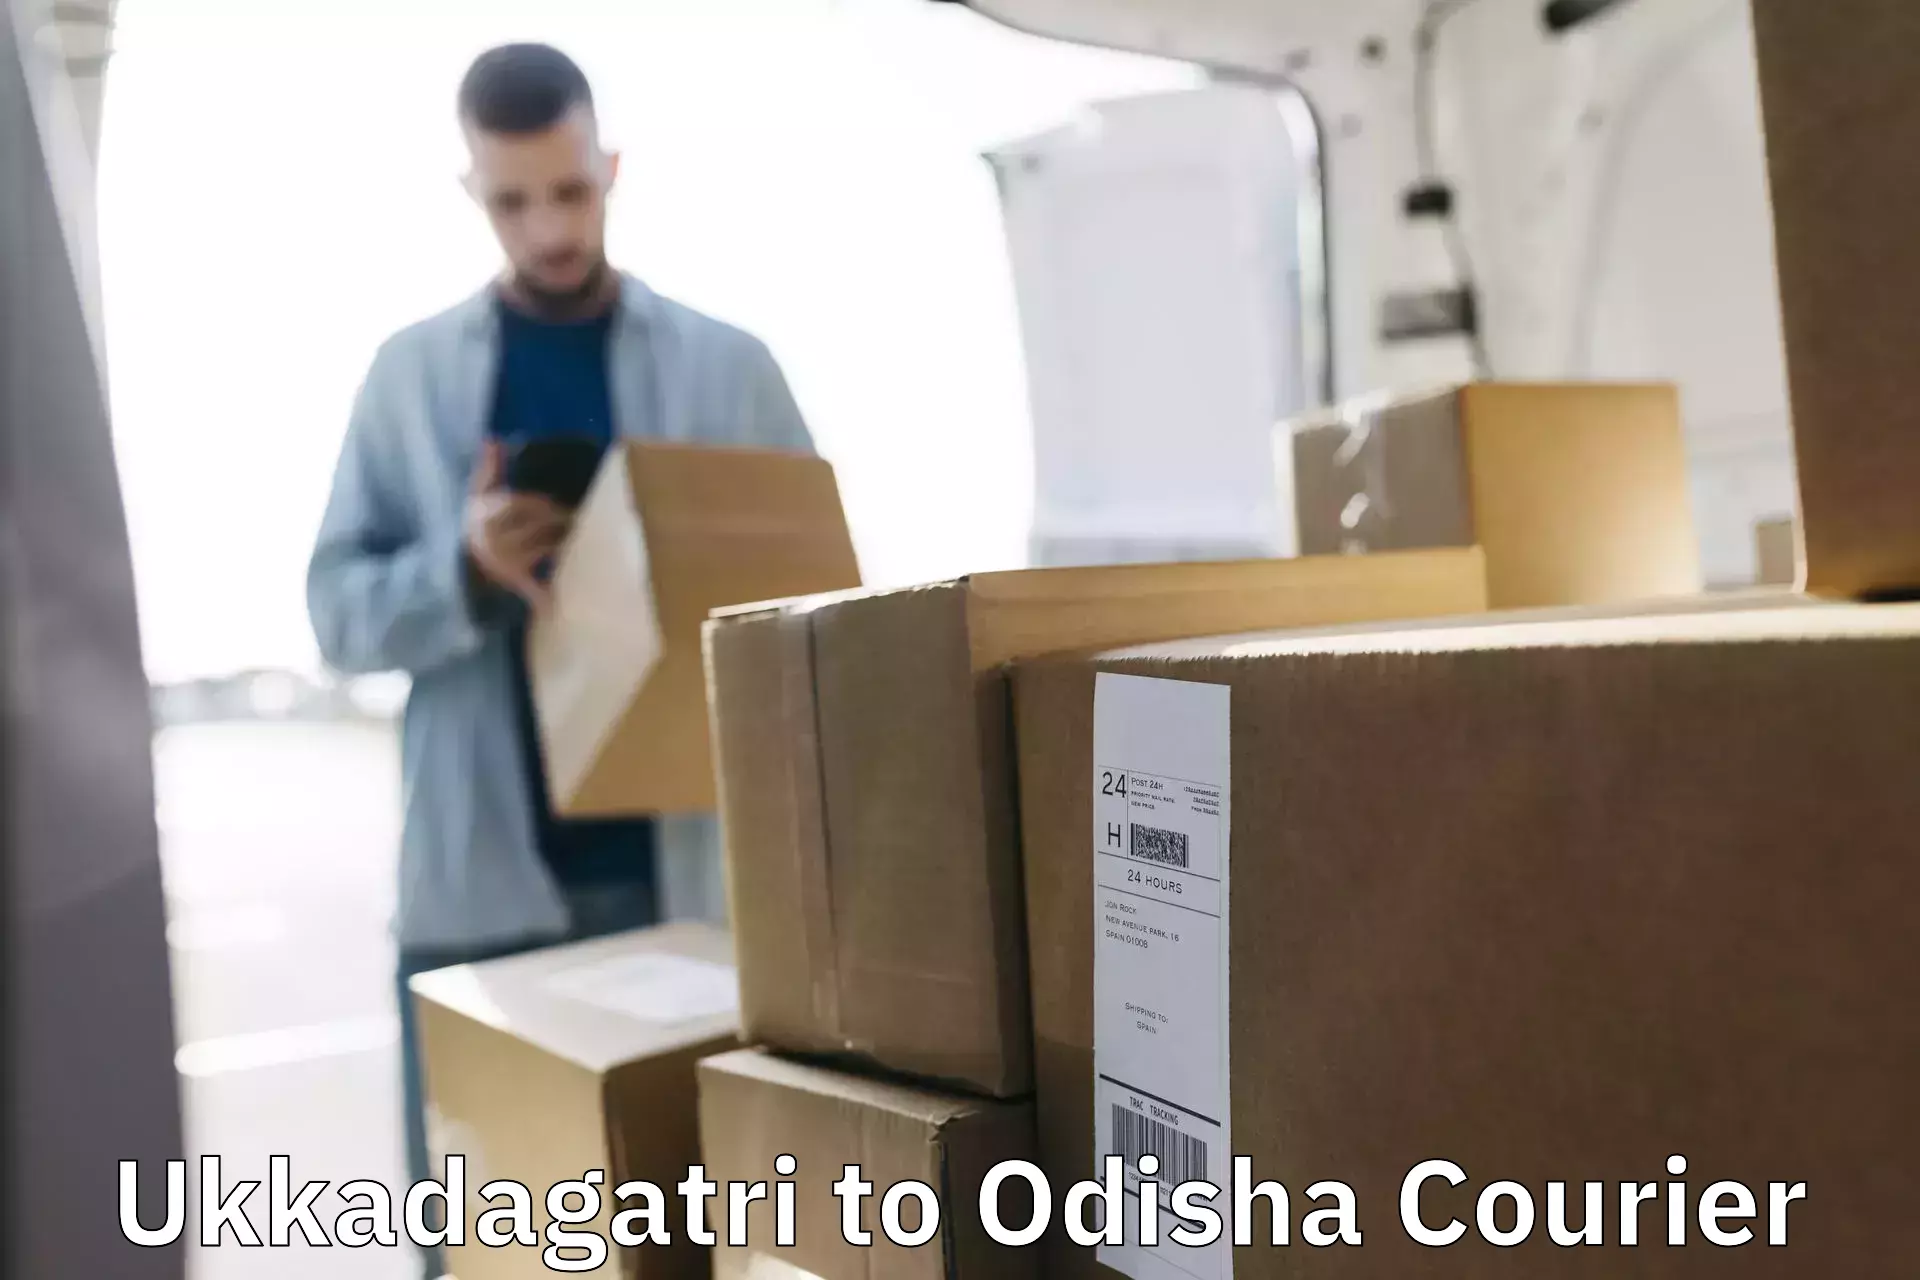 Courier service innovation Ukkadagatri to Odisha